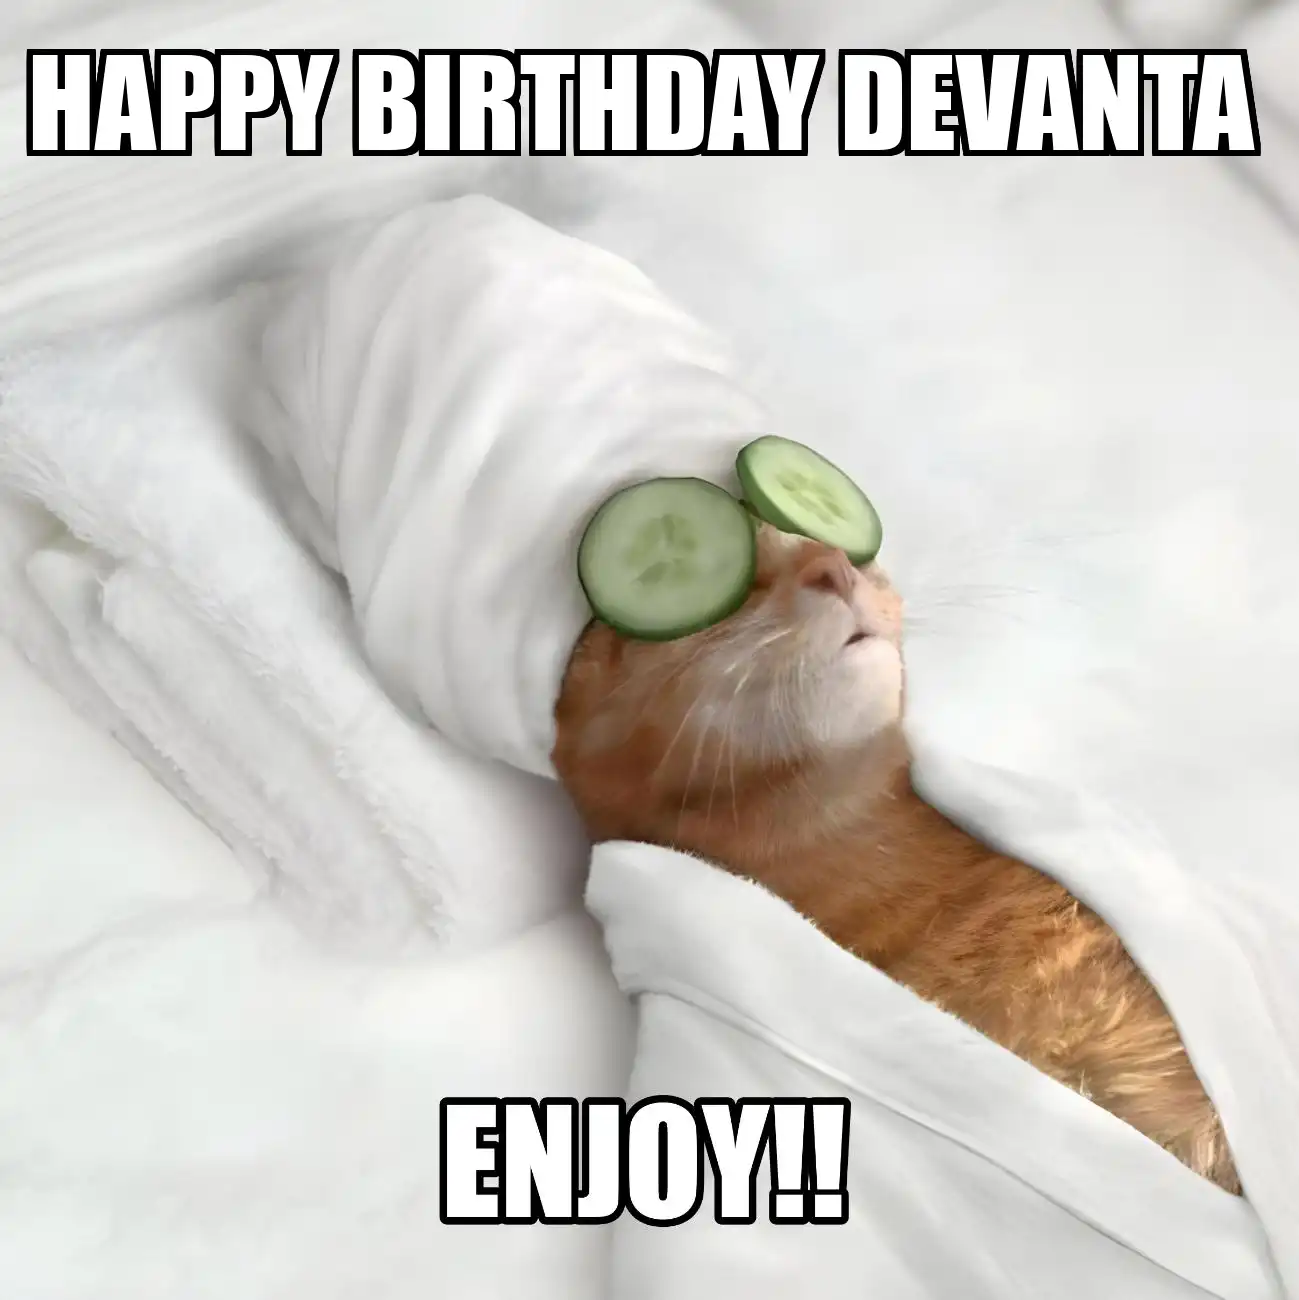 Happy Birthday Devanta Enjoy Cat Meme